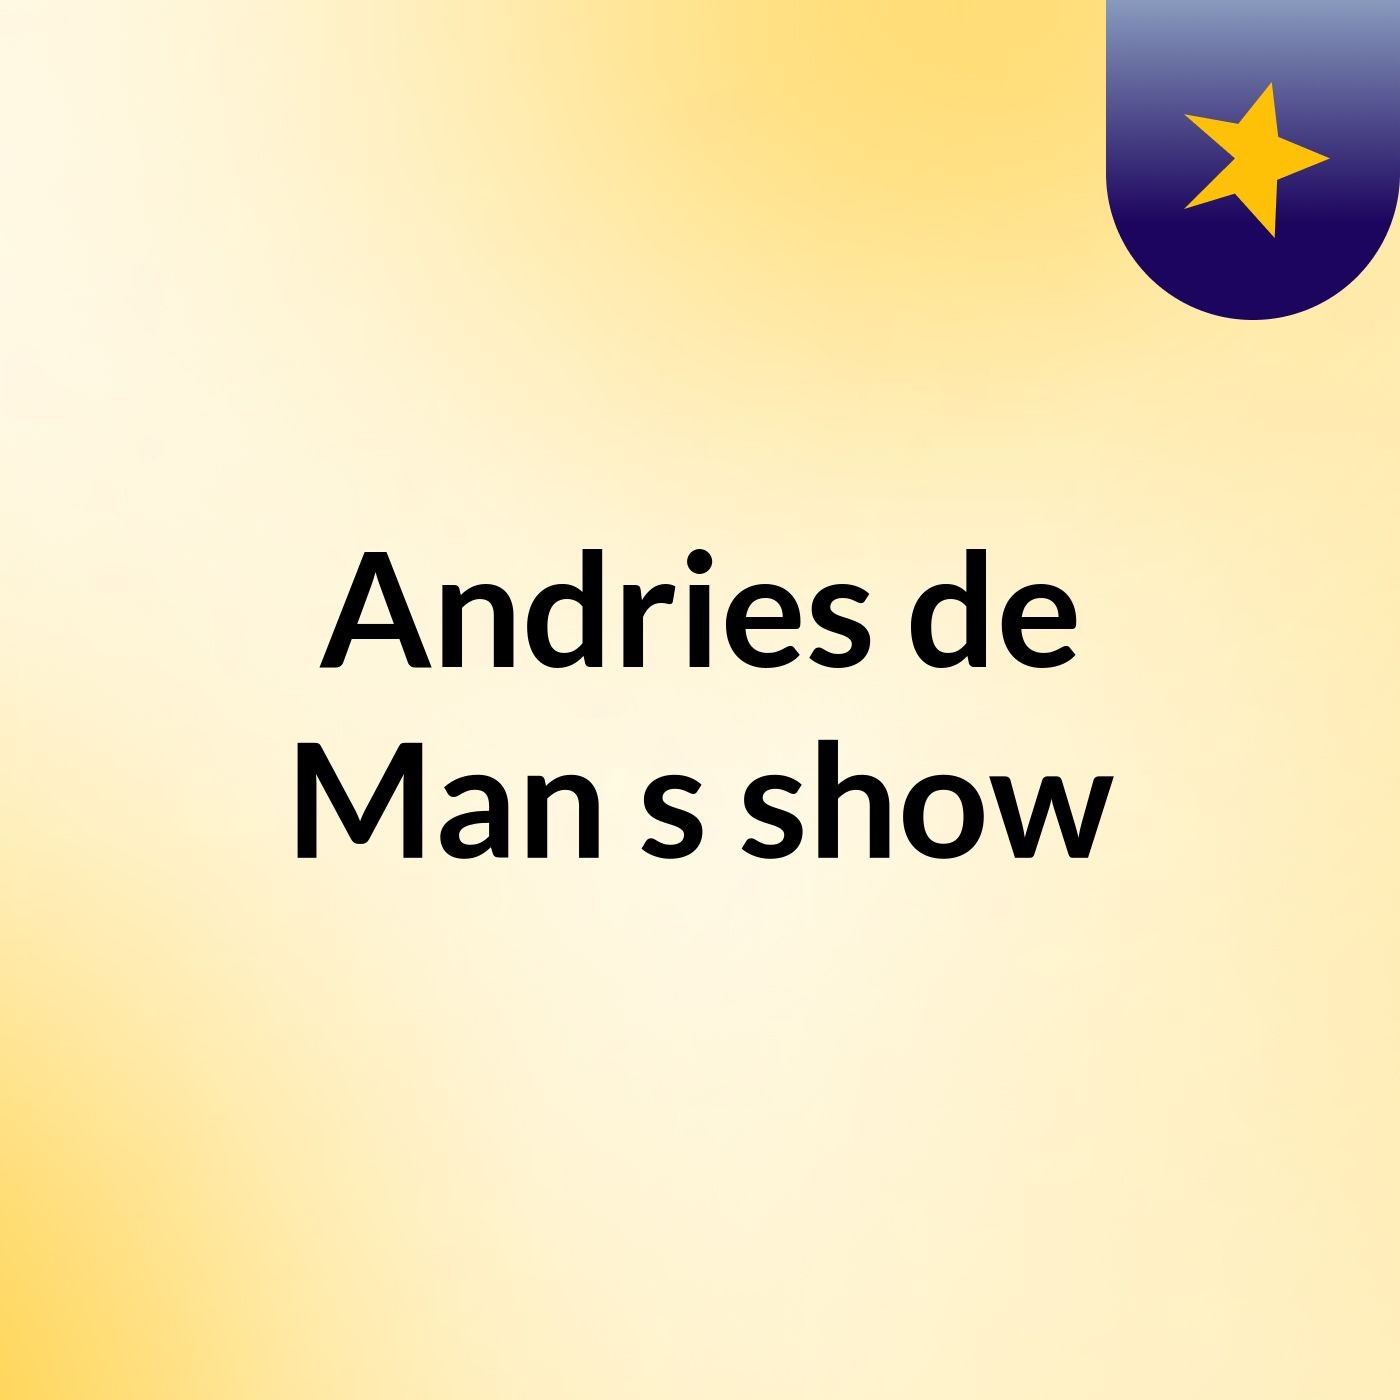 Andries de Man's show